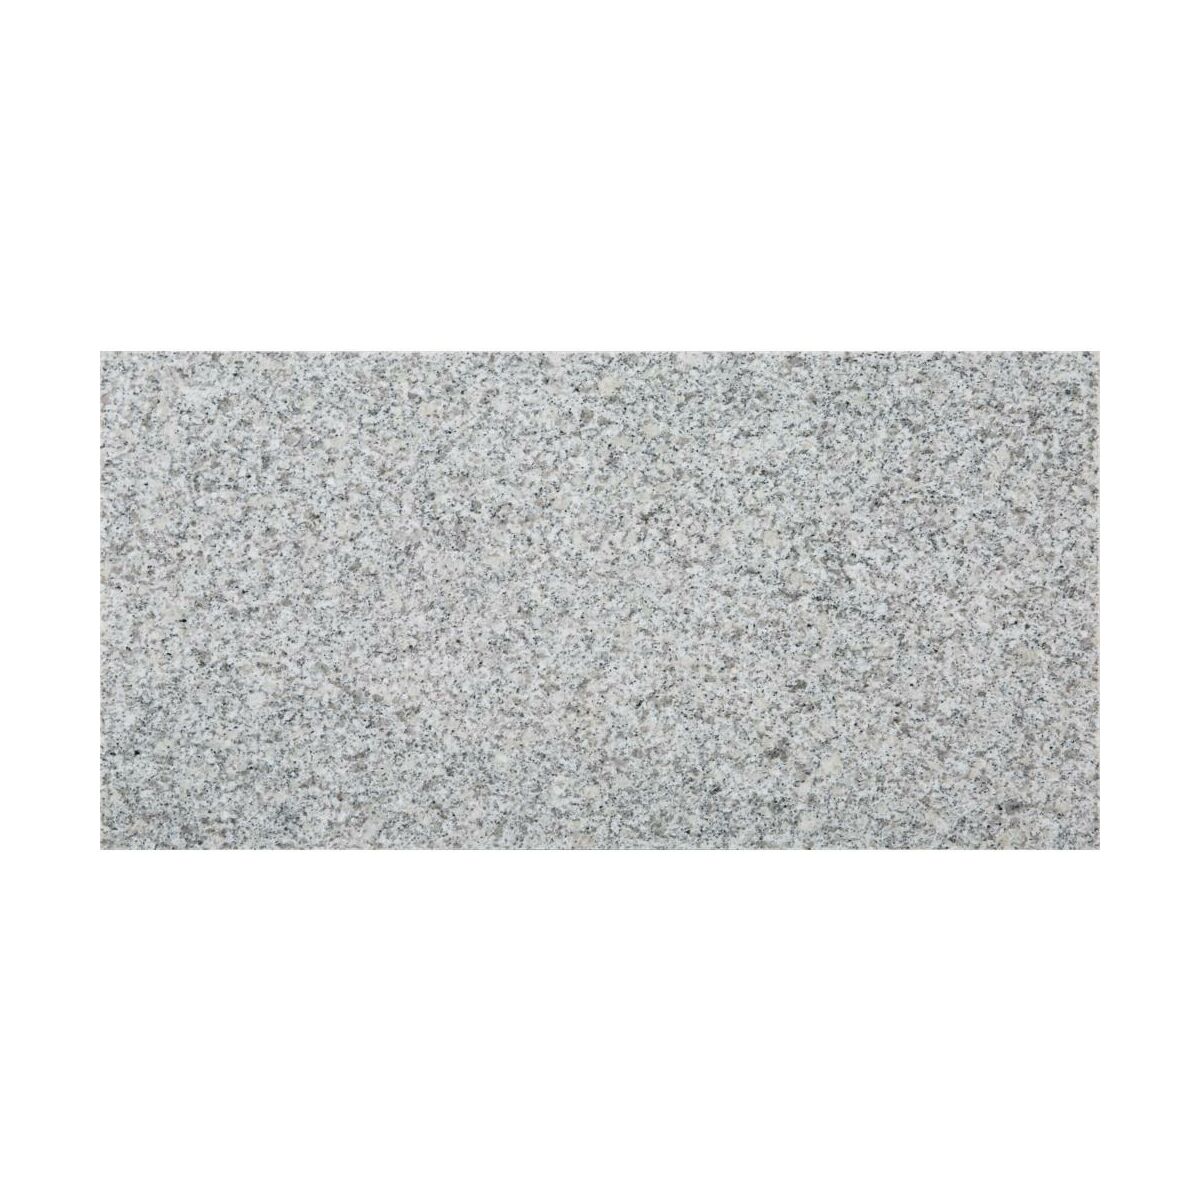 Plyta Granitowa Szara 30 5x61 Granit W Atrakcyjnej Cenie W Sklepach Leroy Merlin